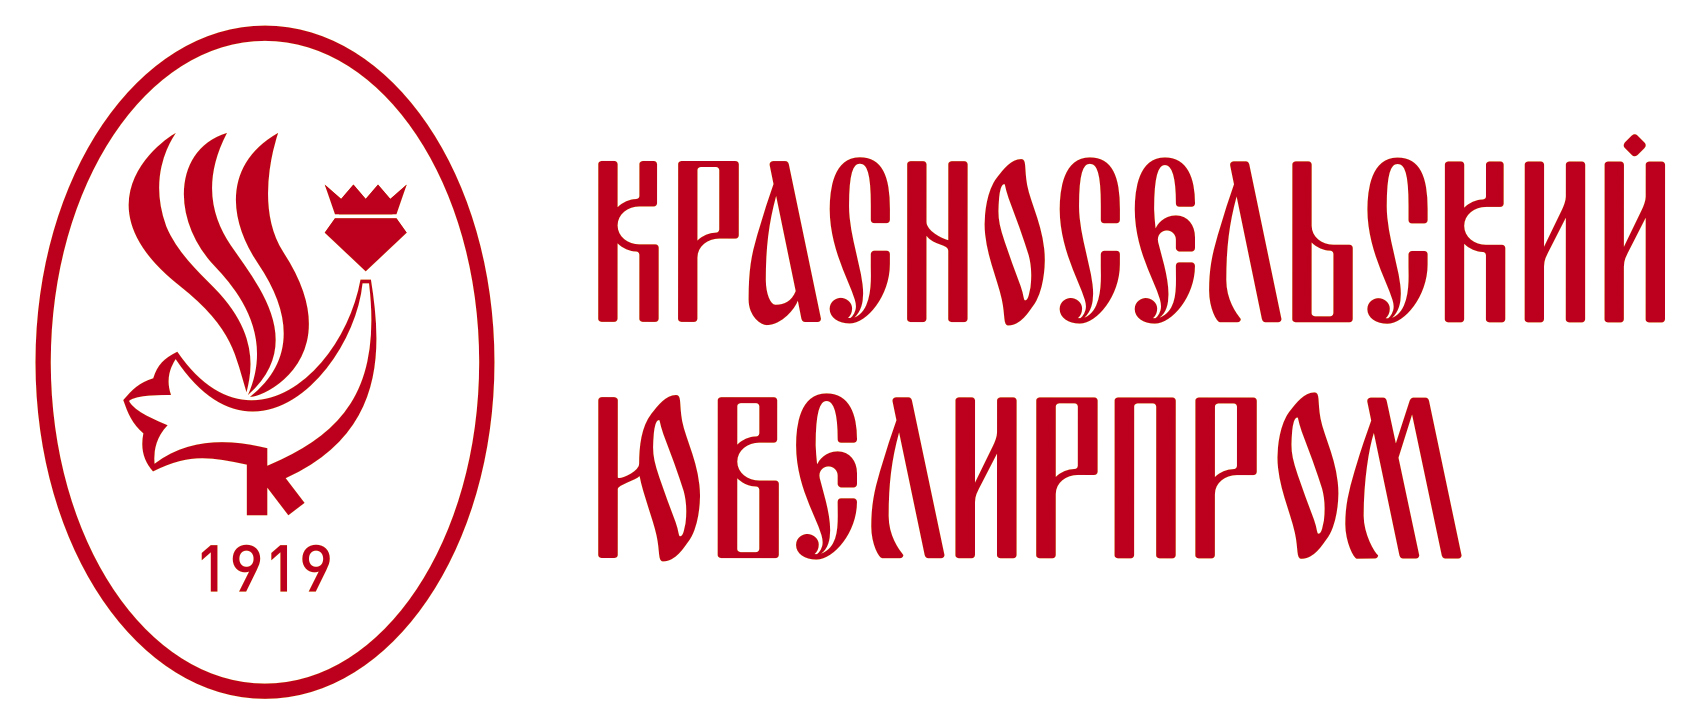 Создавайте новогоднее настроение с украшениями «Красносельского Ювелирпрома»